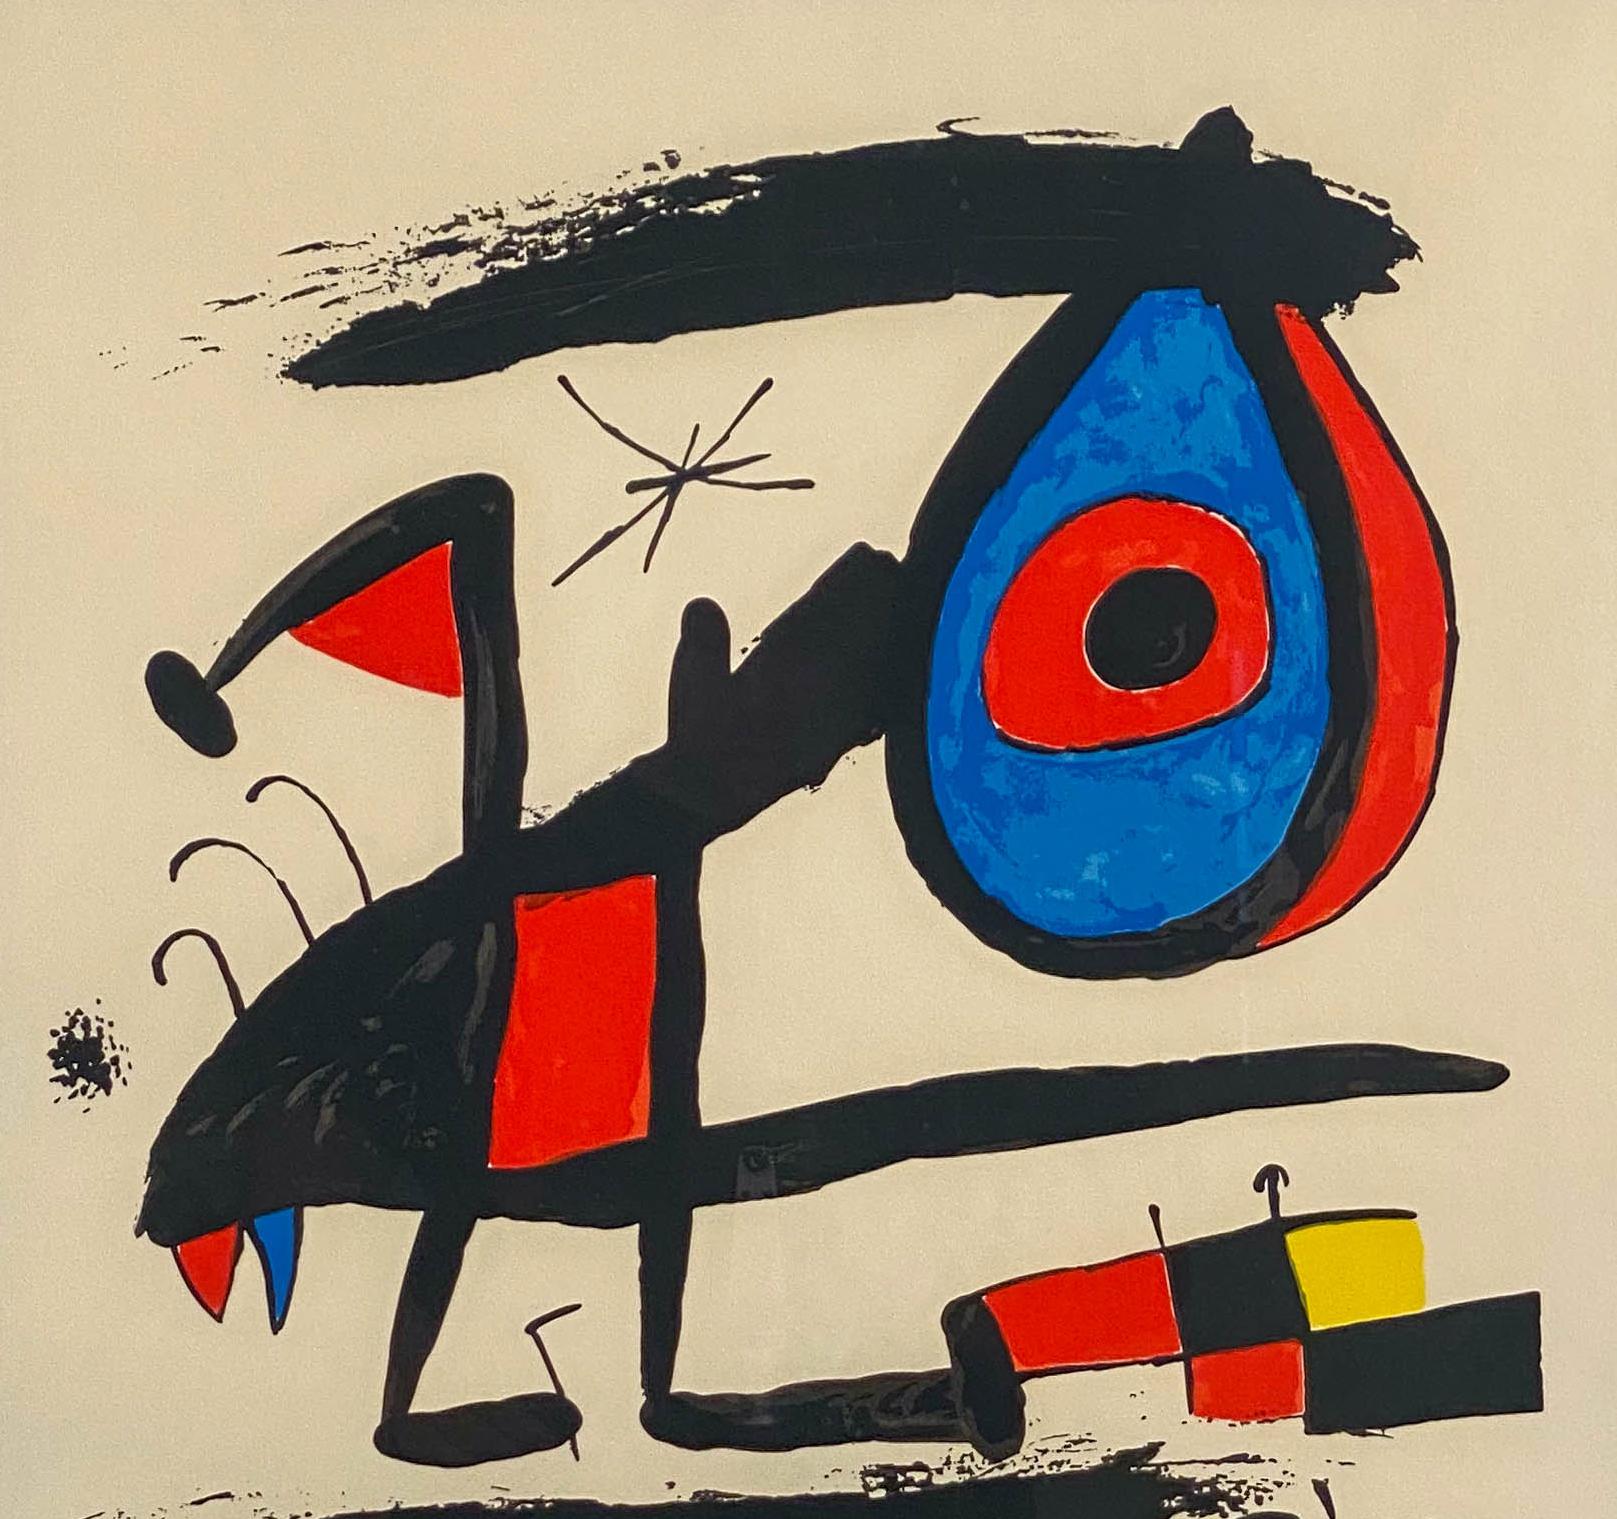 Joan Miro
Espagnol, 1893-1983
Affiche de l'exposition Serie Mallorca

Lithographie en couleurs
28 par 22 in.  Avec cadre 34 x 28 po.
Crayon signé en bas à droite d'une édition de 26/75 
Référence : Cramer, 918

Joan Miró Ferra est né le 20 avril